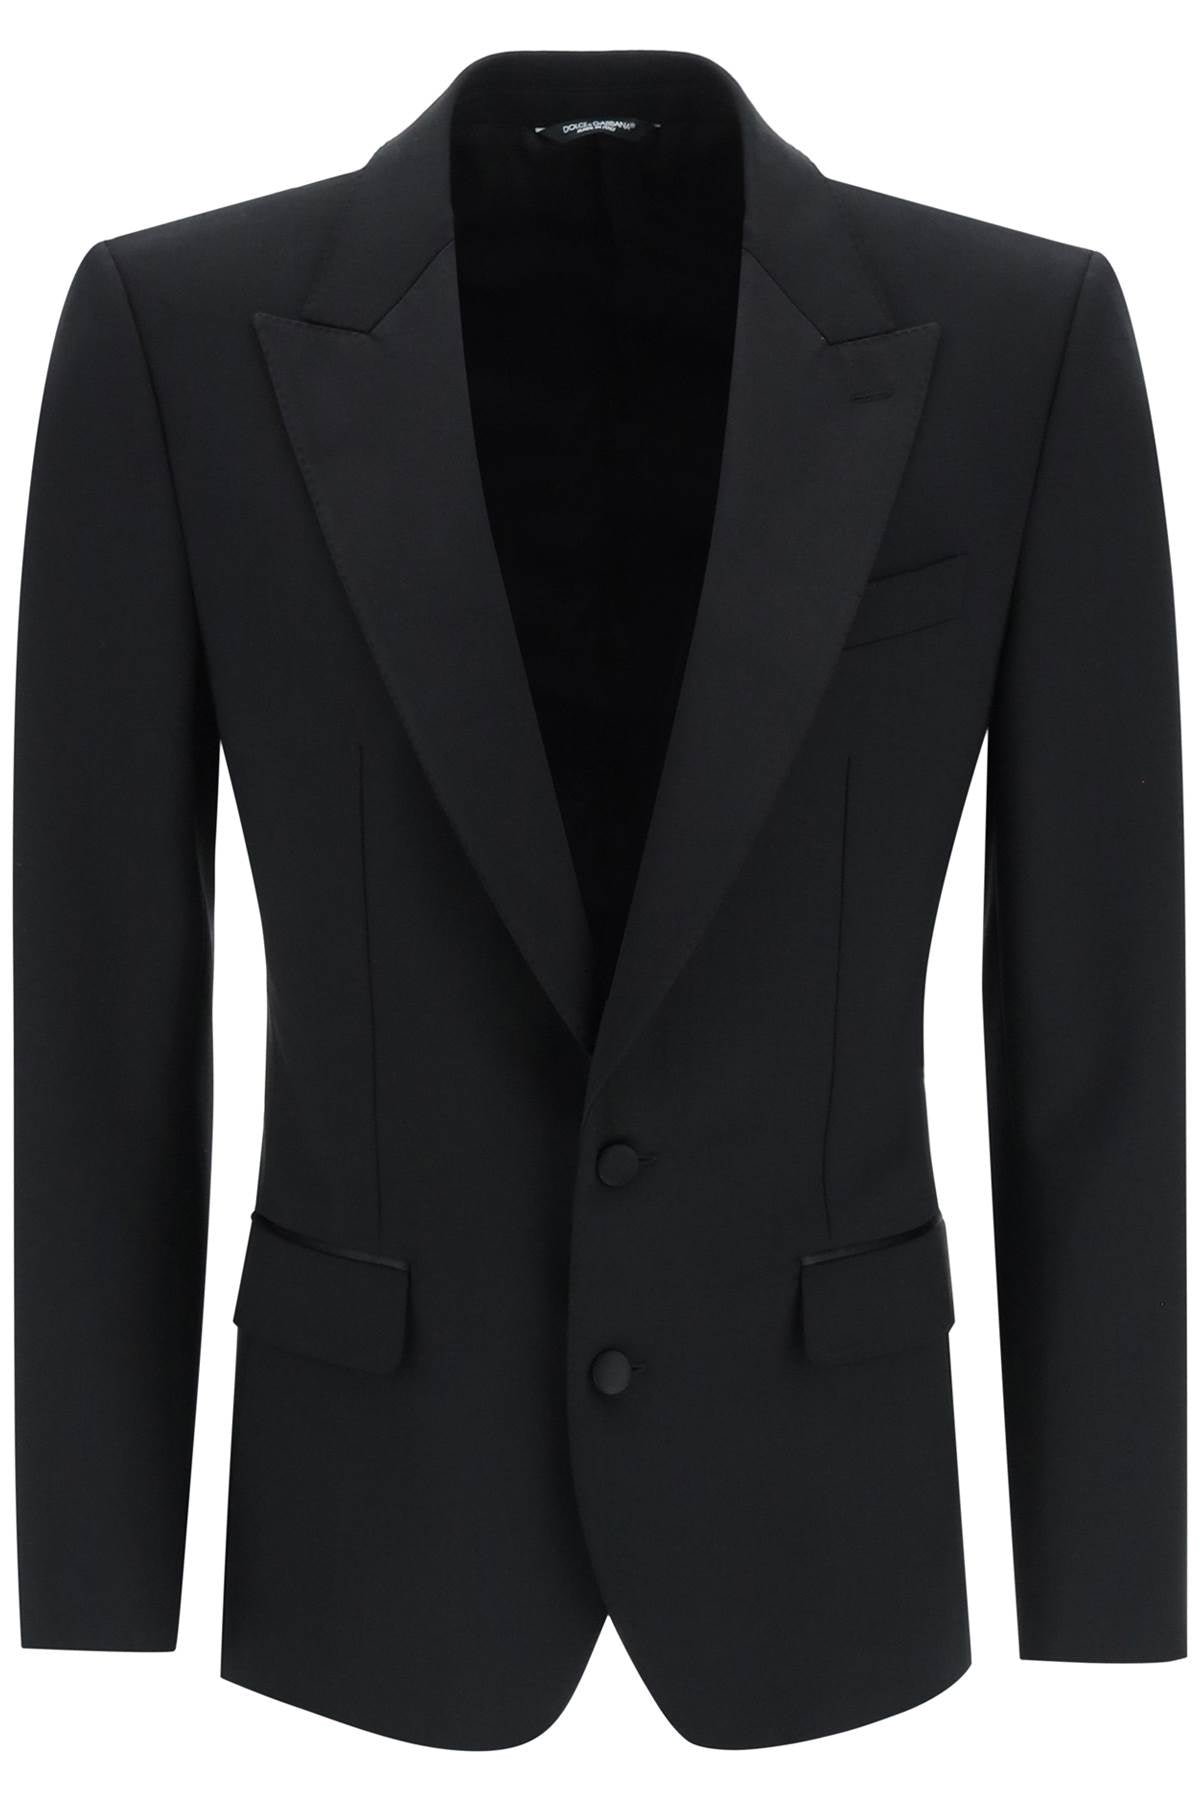 Dolce & gabbana single-breasted tuxedo jacket-0